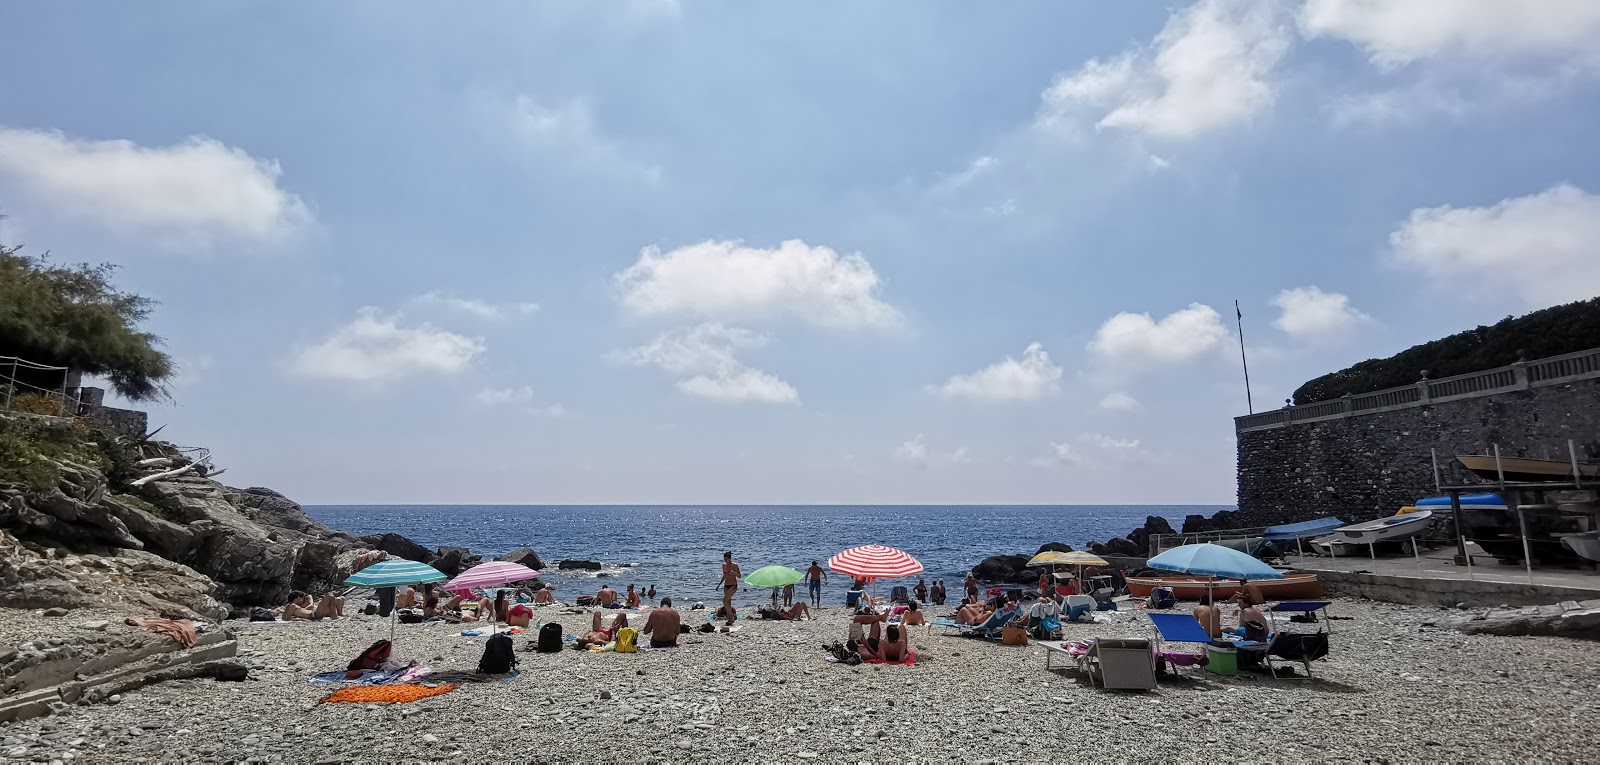 Φωτογραφία του Spiaggia Murcarolo και η εγκατάσταση